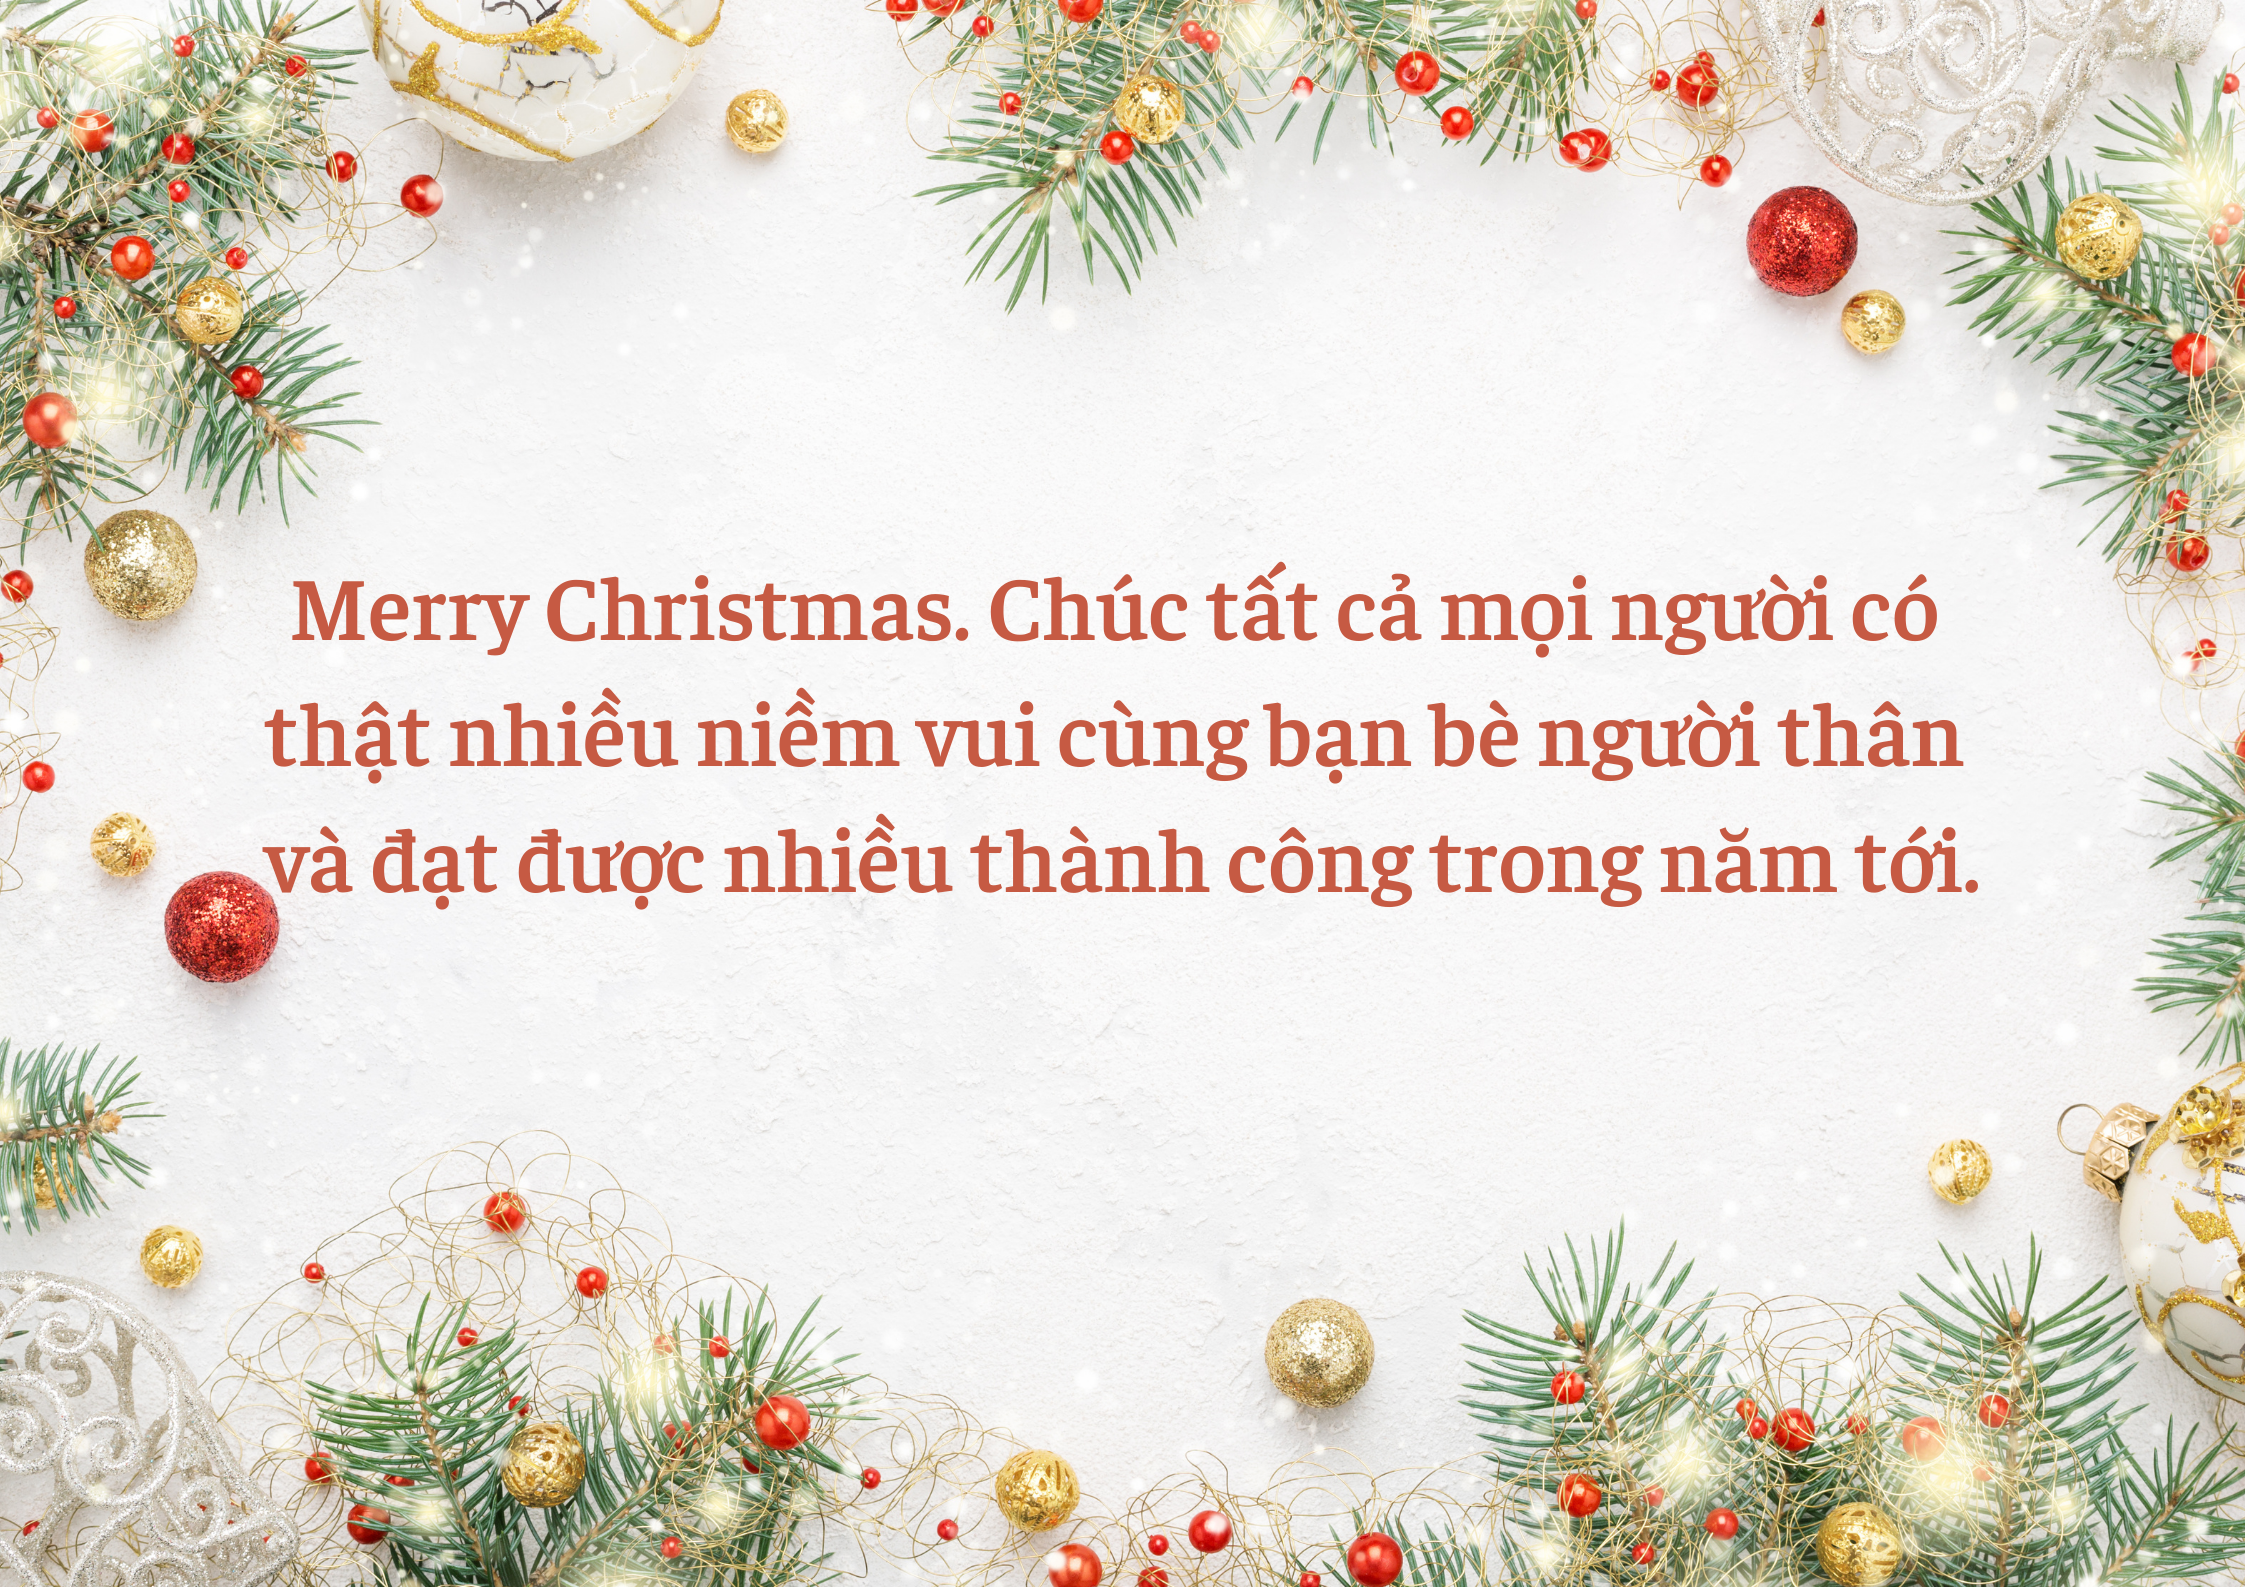 Những lời chúc Giáng sinh ý nghĩa là điều mà ai cũng muốn gửi đến những người mình yêu thương. Tuy nhiên, để có những lời chúc đặc biệt và ý nghĩa hơn, hãy tham khảo những hình ảnh và câu nói đẹp đến từ chúng tôi. Cùng giúp cho mùa Noel năm nay trở nên đáng nhớ hơn bao giờ hết.